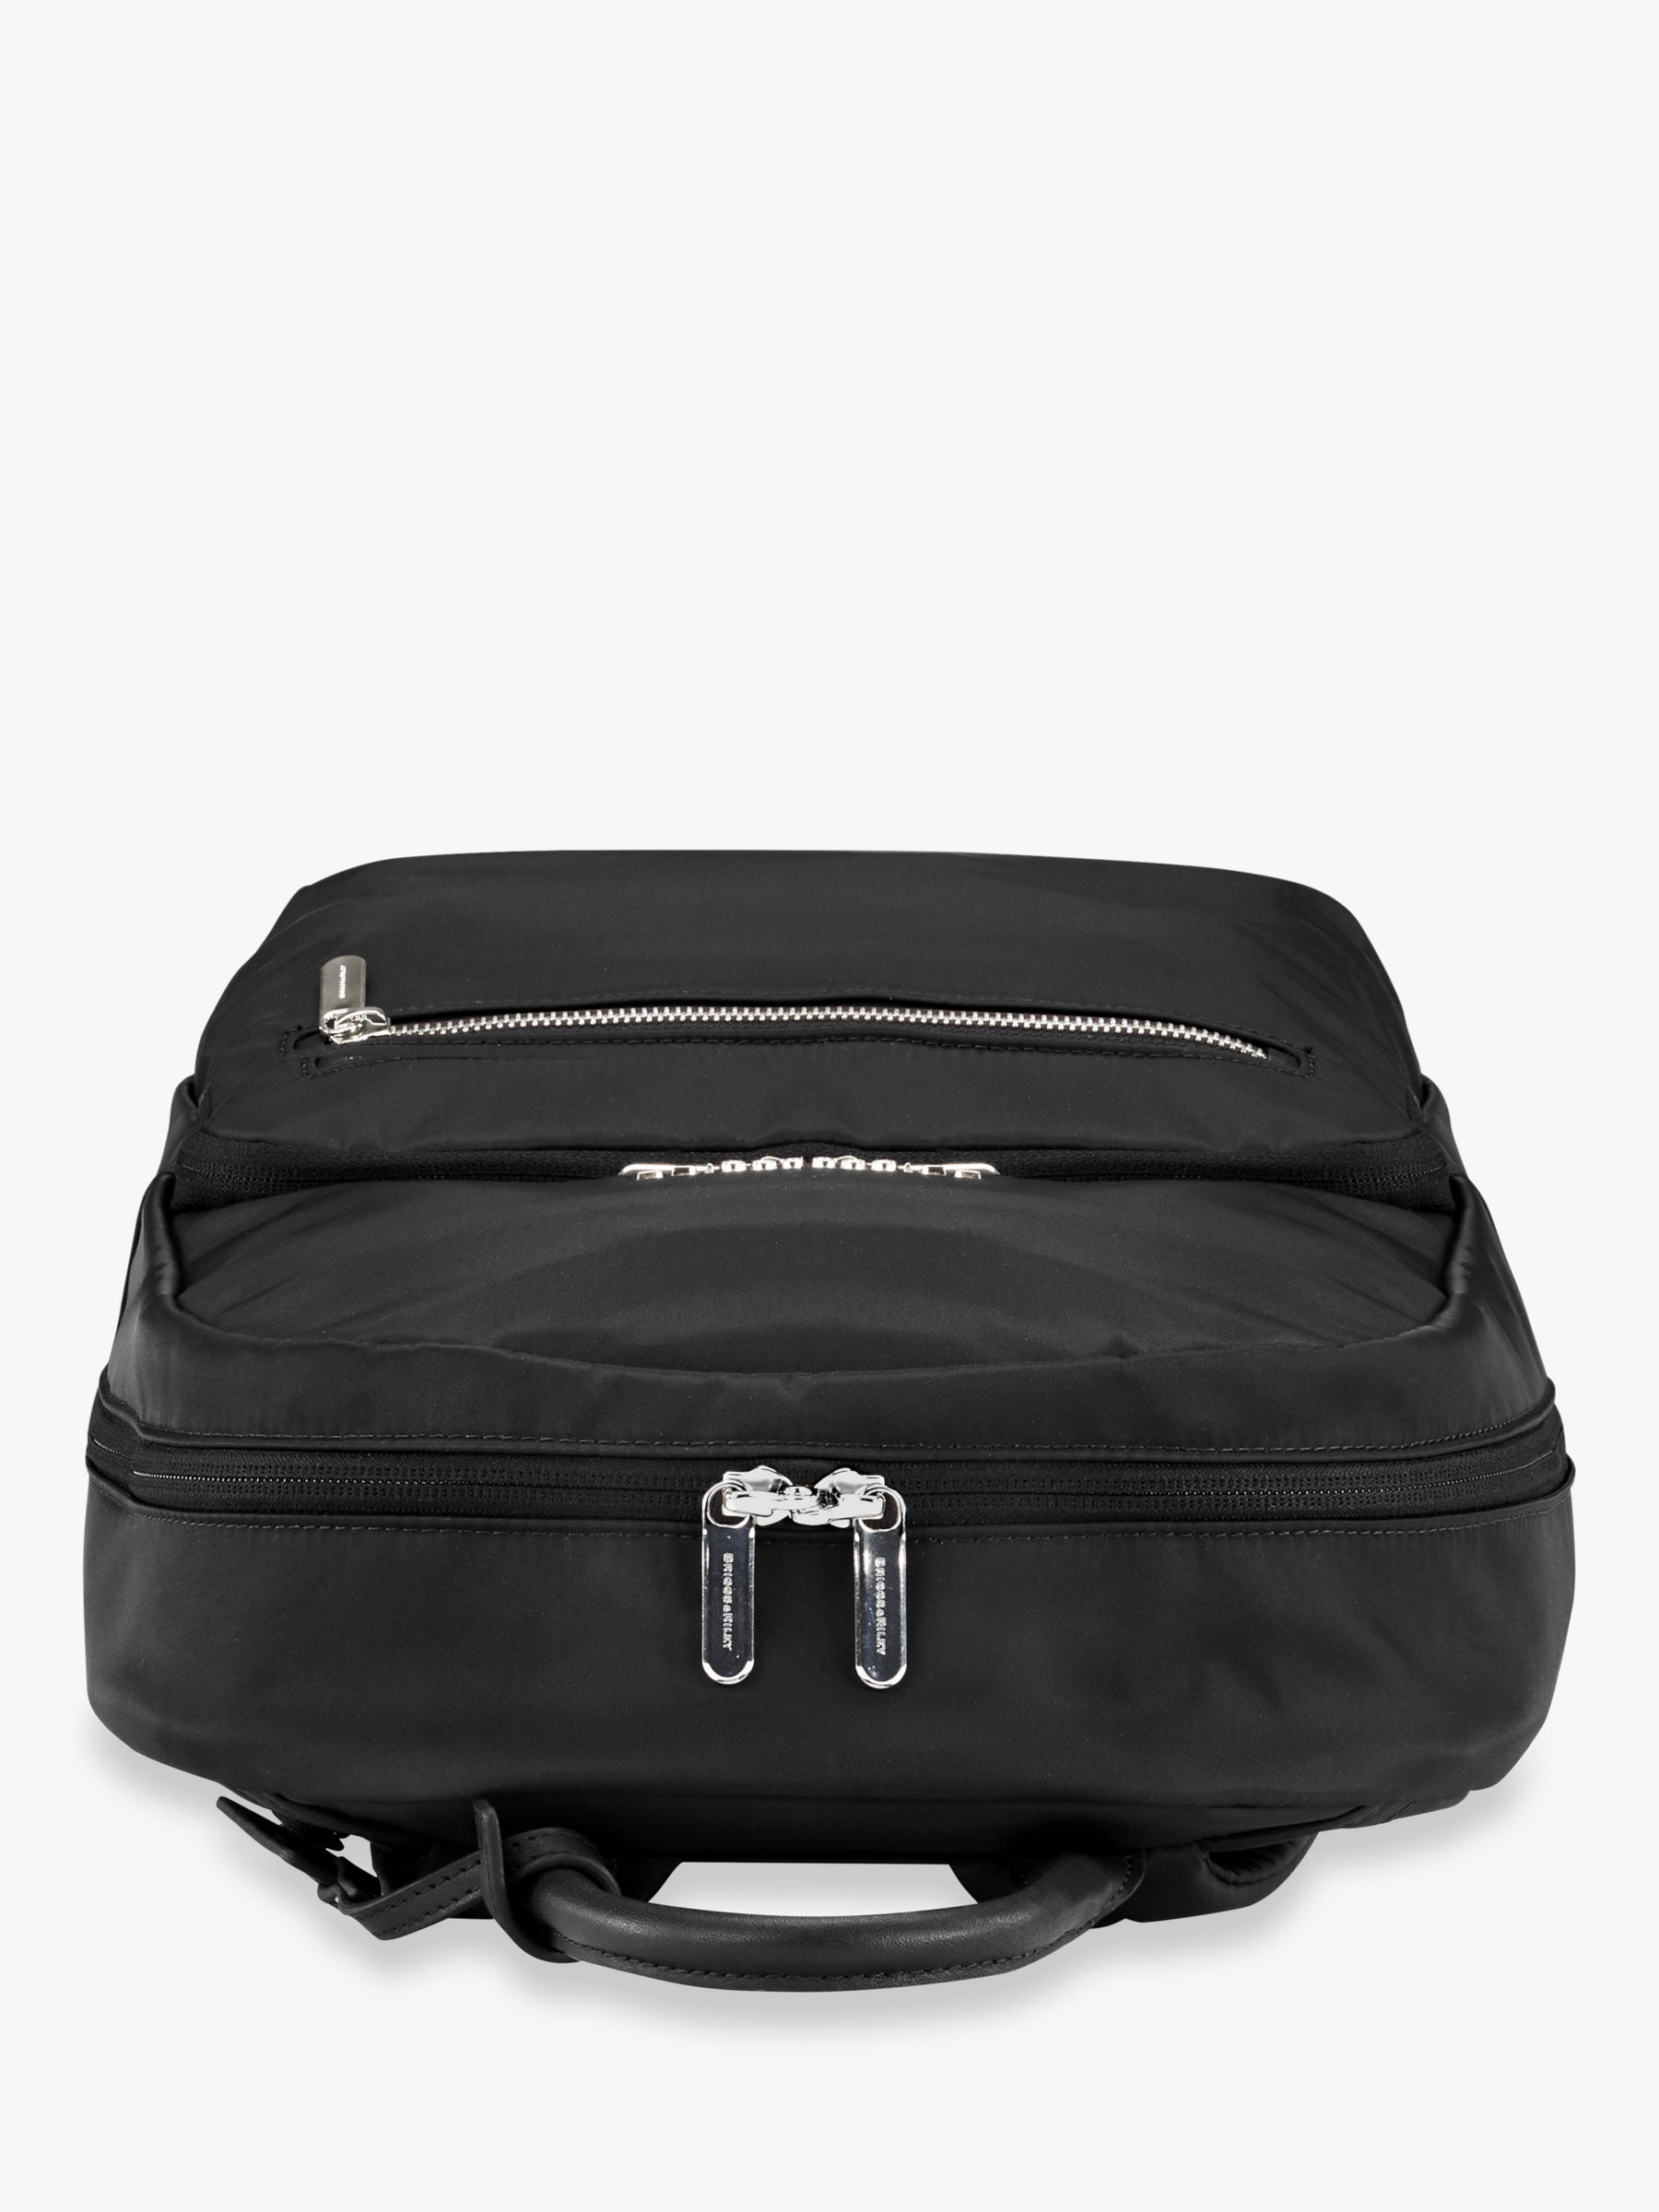 Buy Briggs & Riley Rhapsody Essential Backpack Online at johnlewis.com